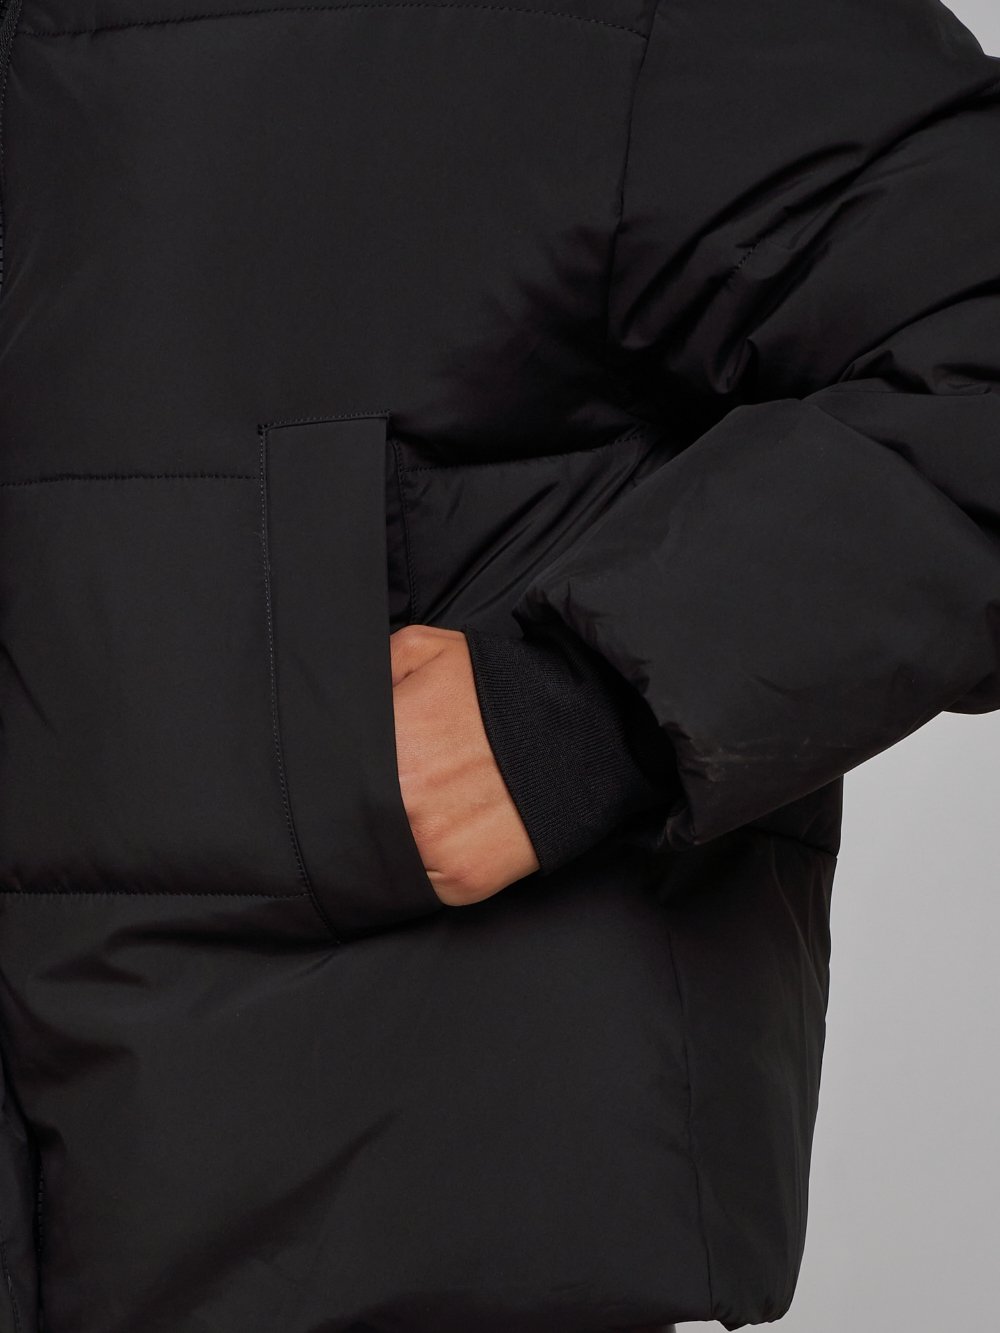 Купить куртку зимнюю оптом от производителя недорого в Москве 52309Ch 1